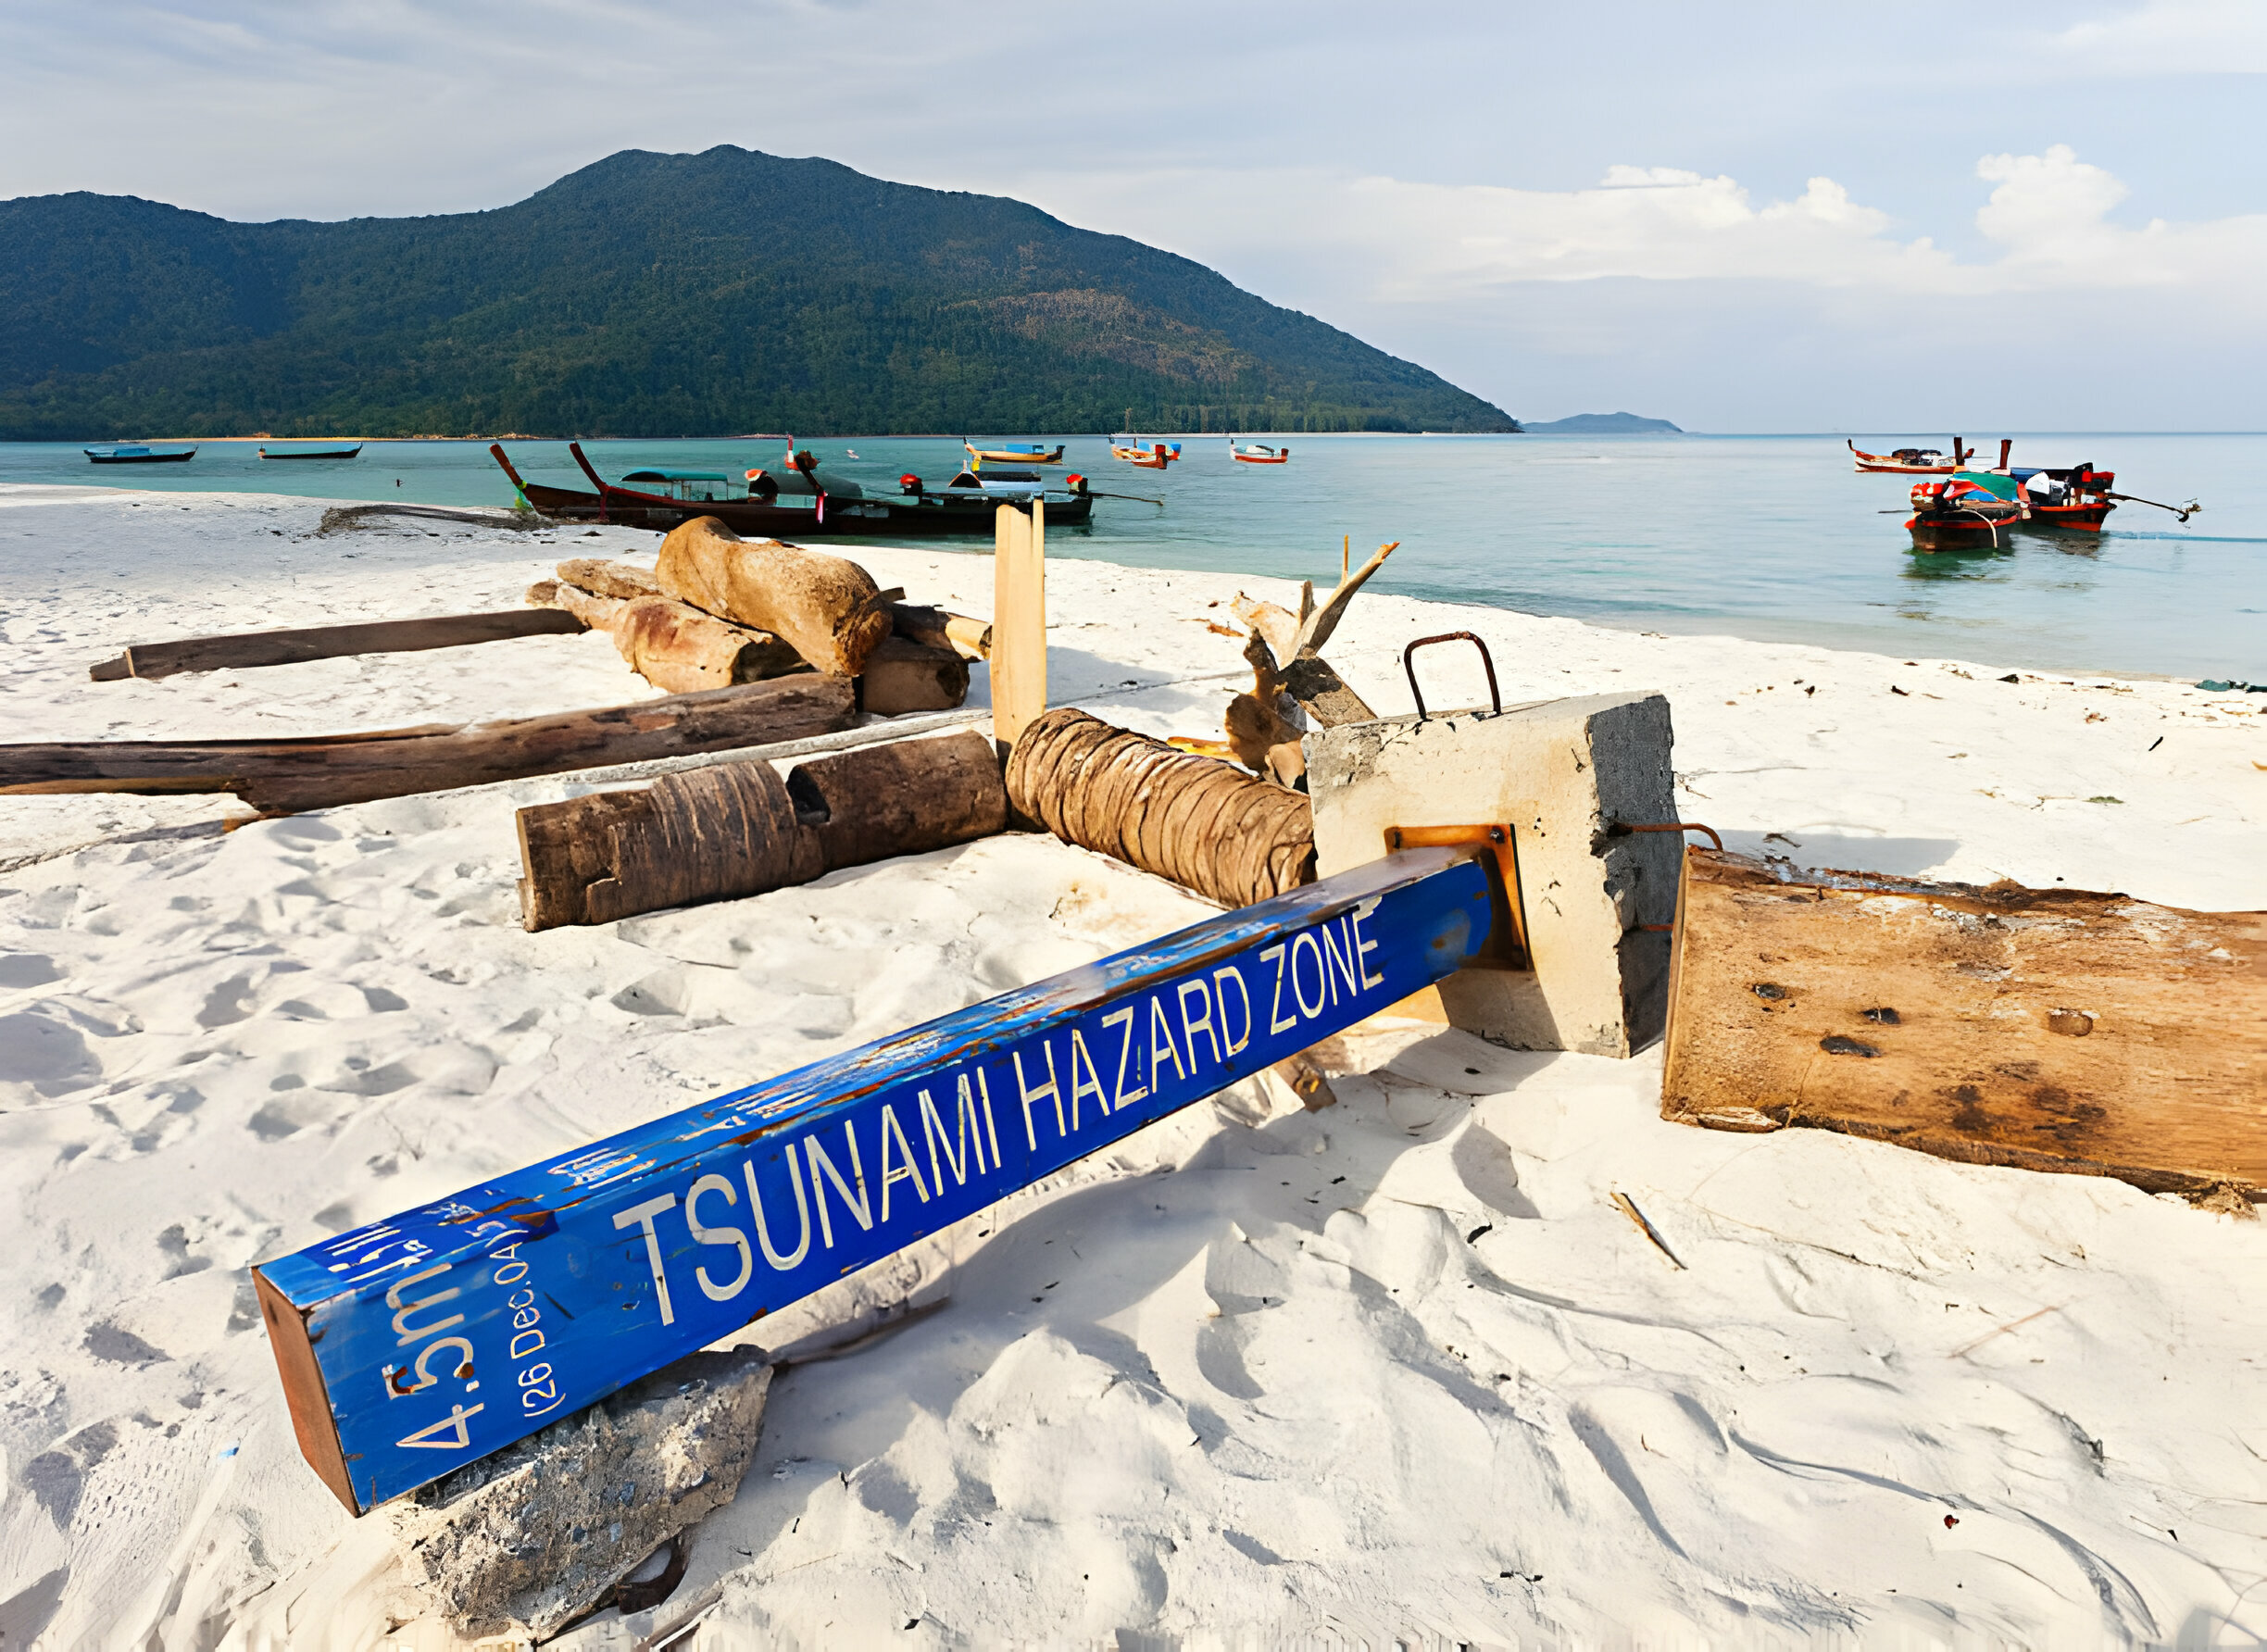 Panneau 'zone dangereuse tsunami' tombé parmi les débris sur une plage paisible avec des bateaux et des montagnes en arrière-plan.